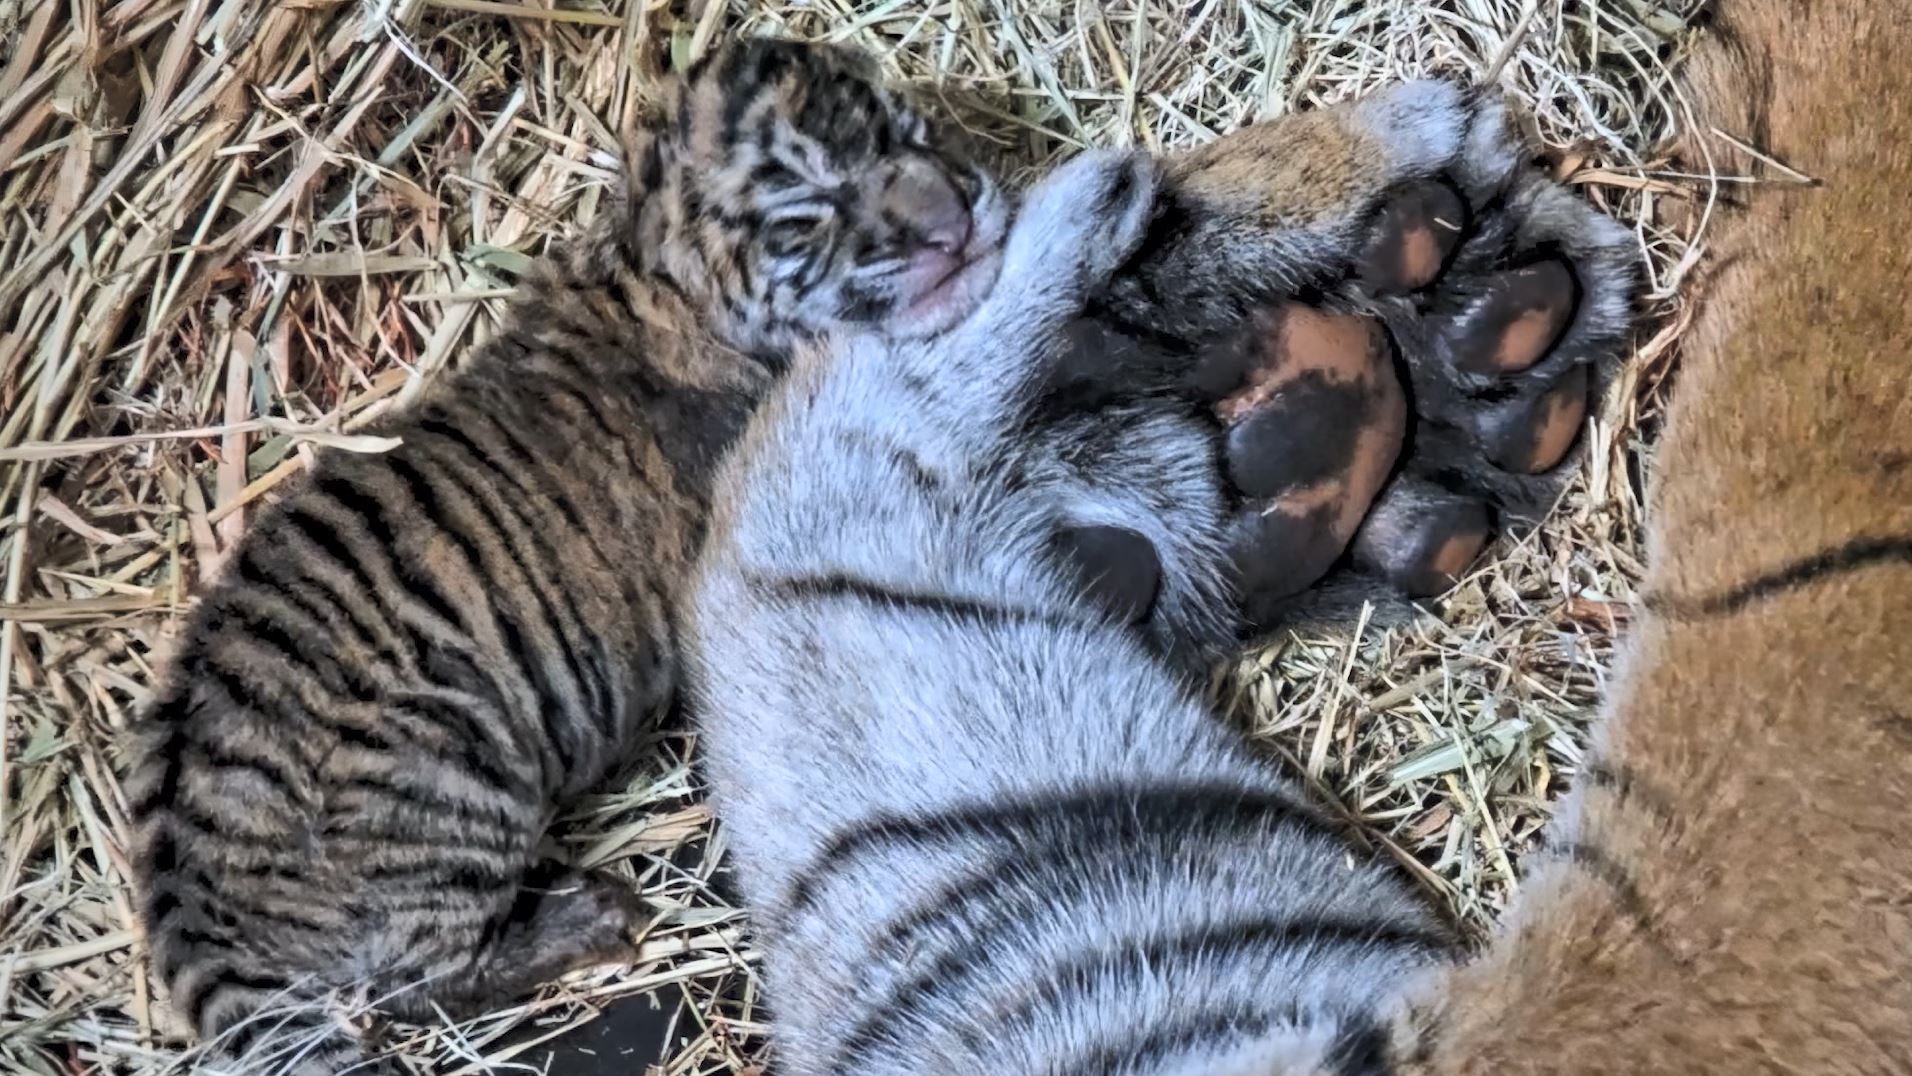 Adorable Sumatran tiger cubs born at San Diego Zoo's Safari Park